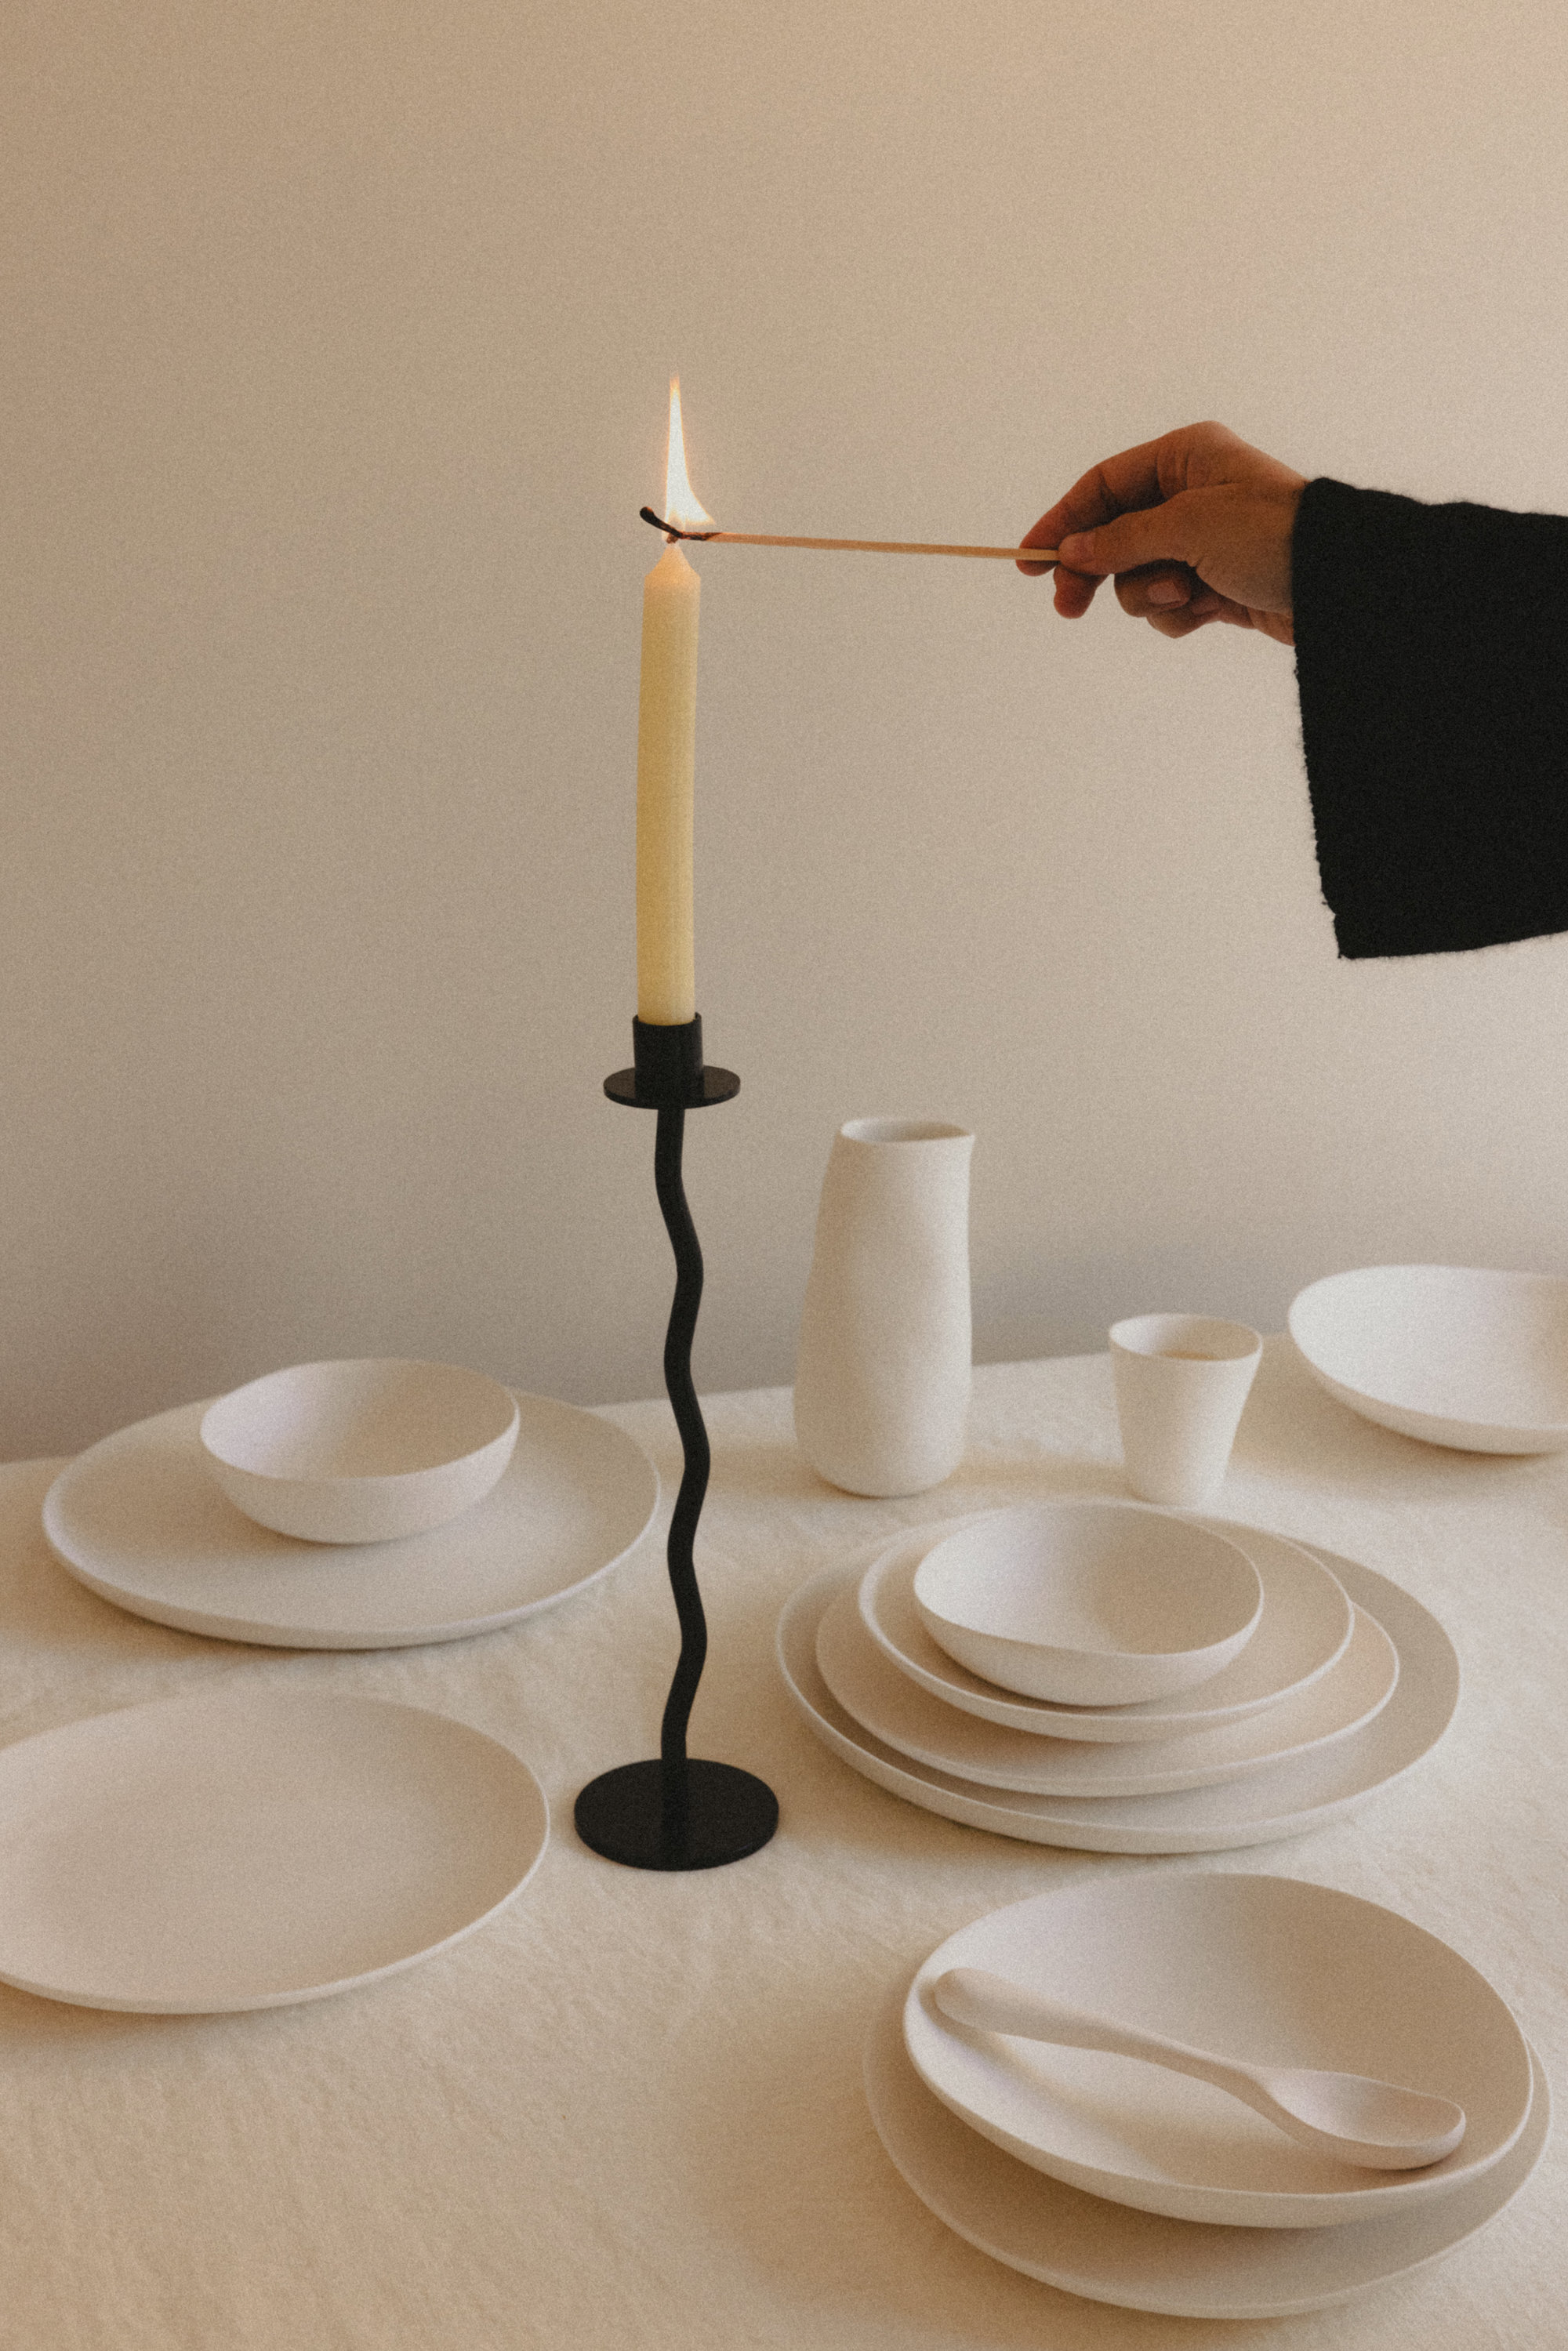 mano encendiendo una vela en una mesa con vajilla blanca